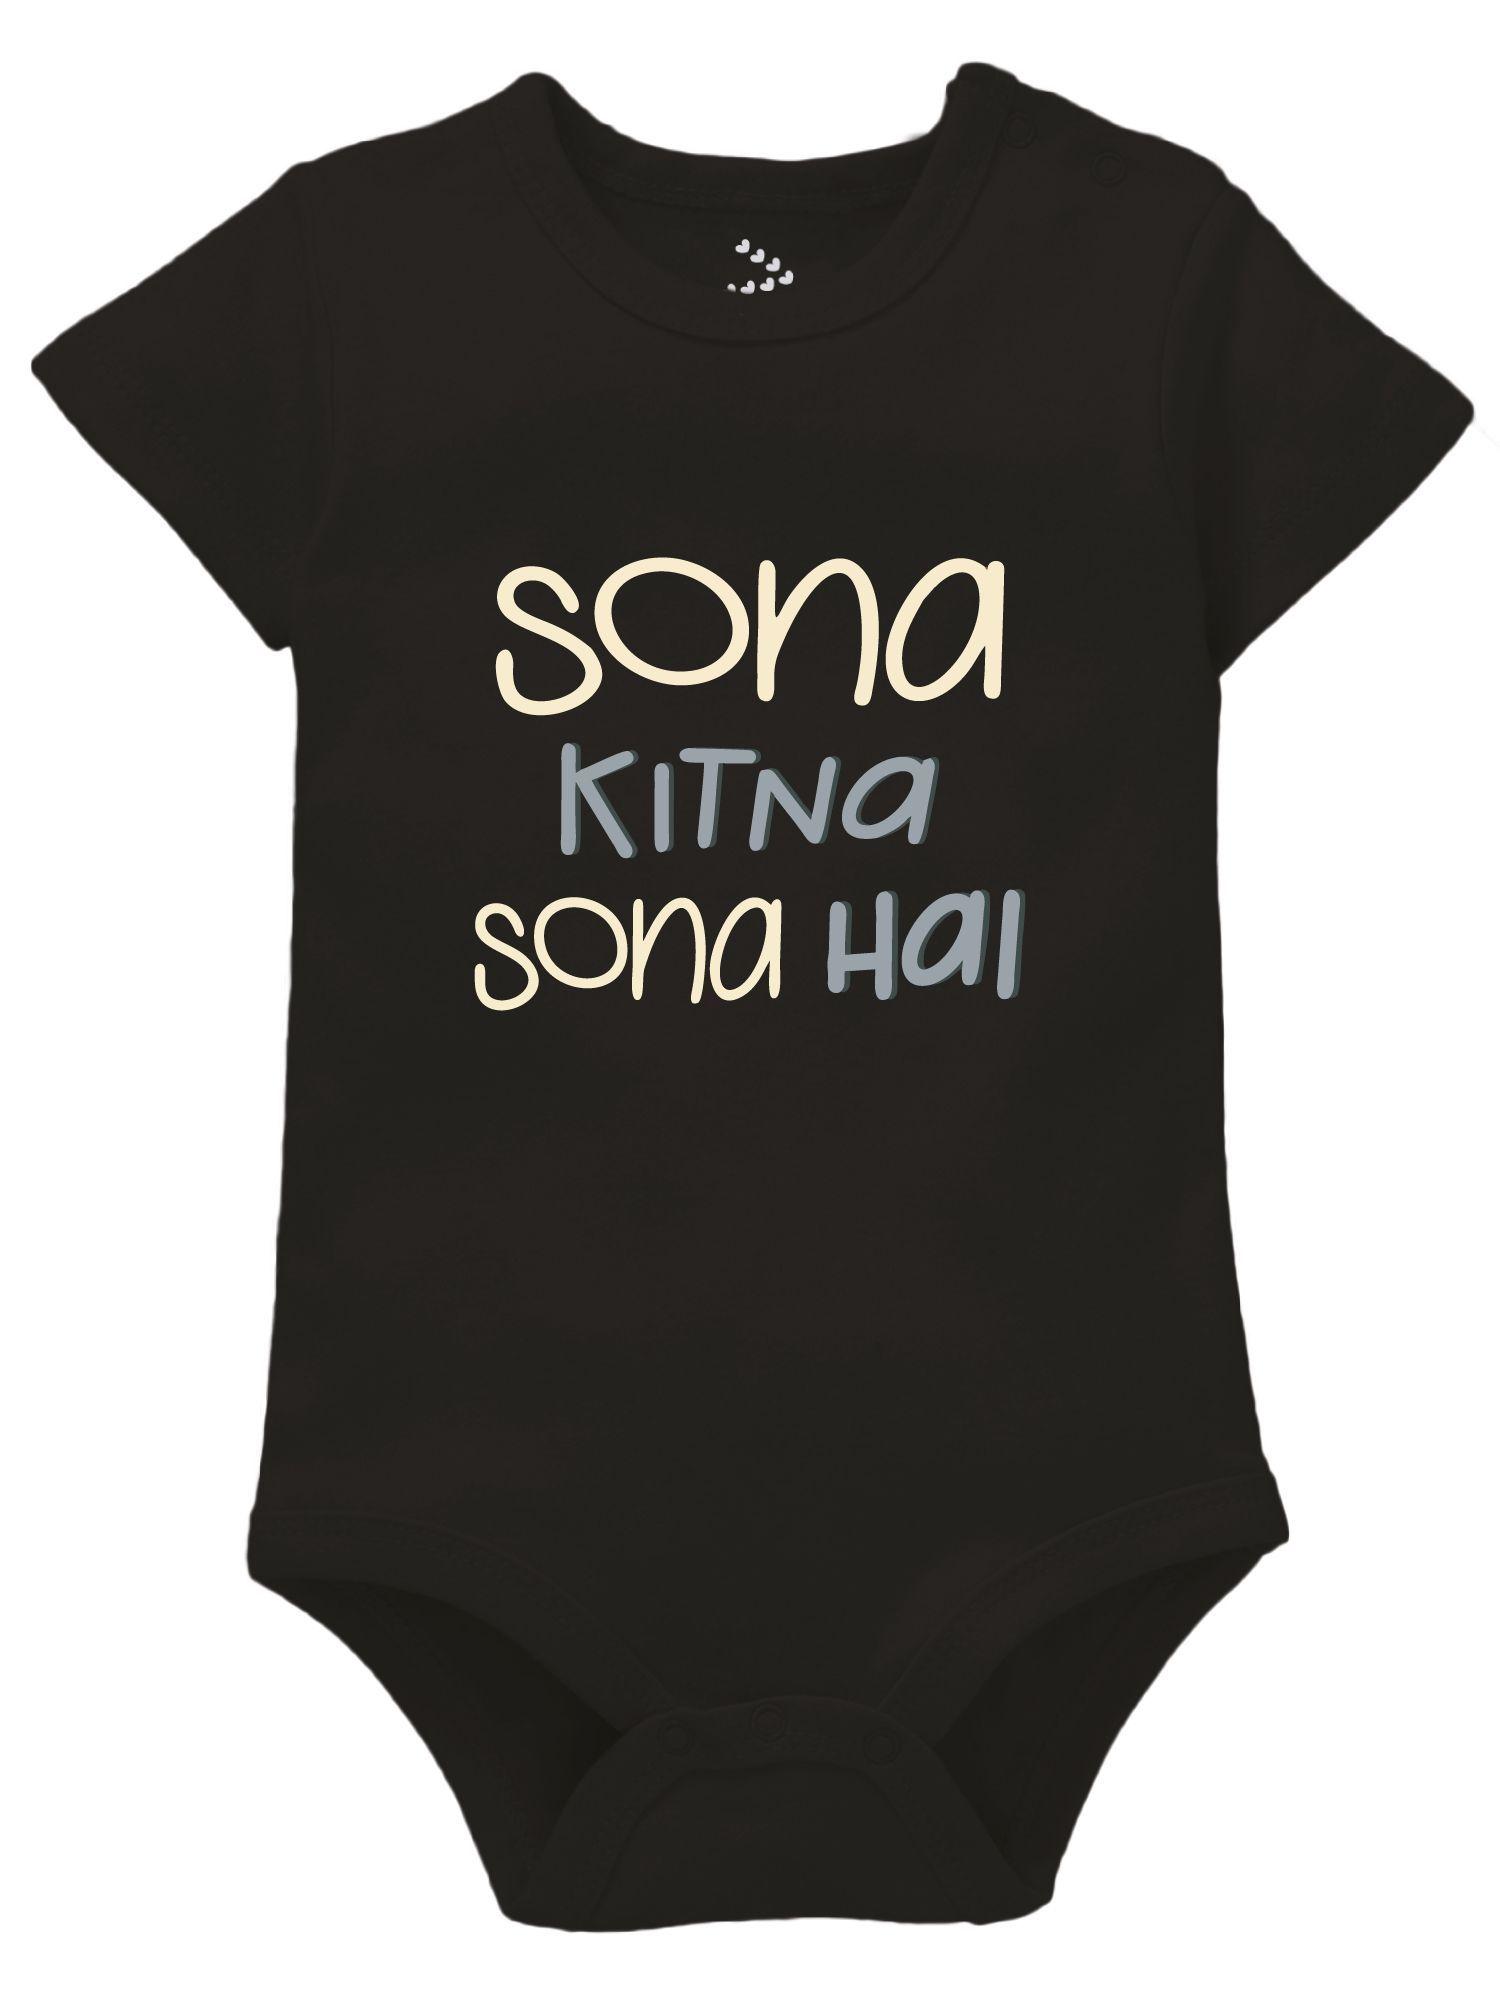 sona-kitna-sona-hai-newborn-baby-romper-clothes-new-born-baby-theme